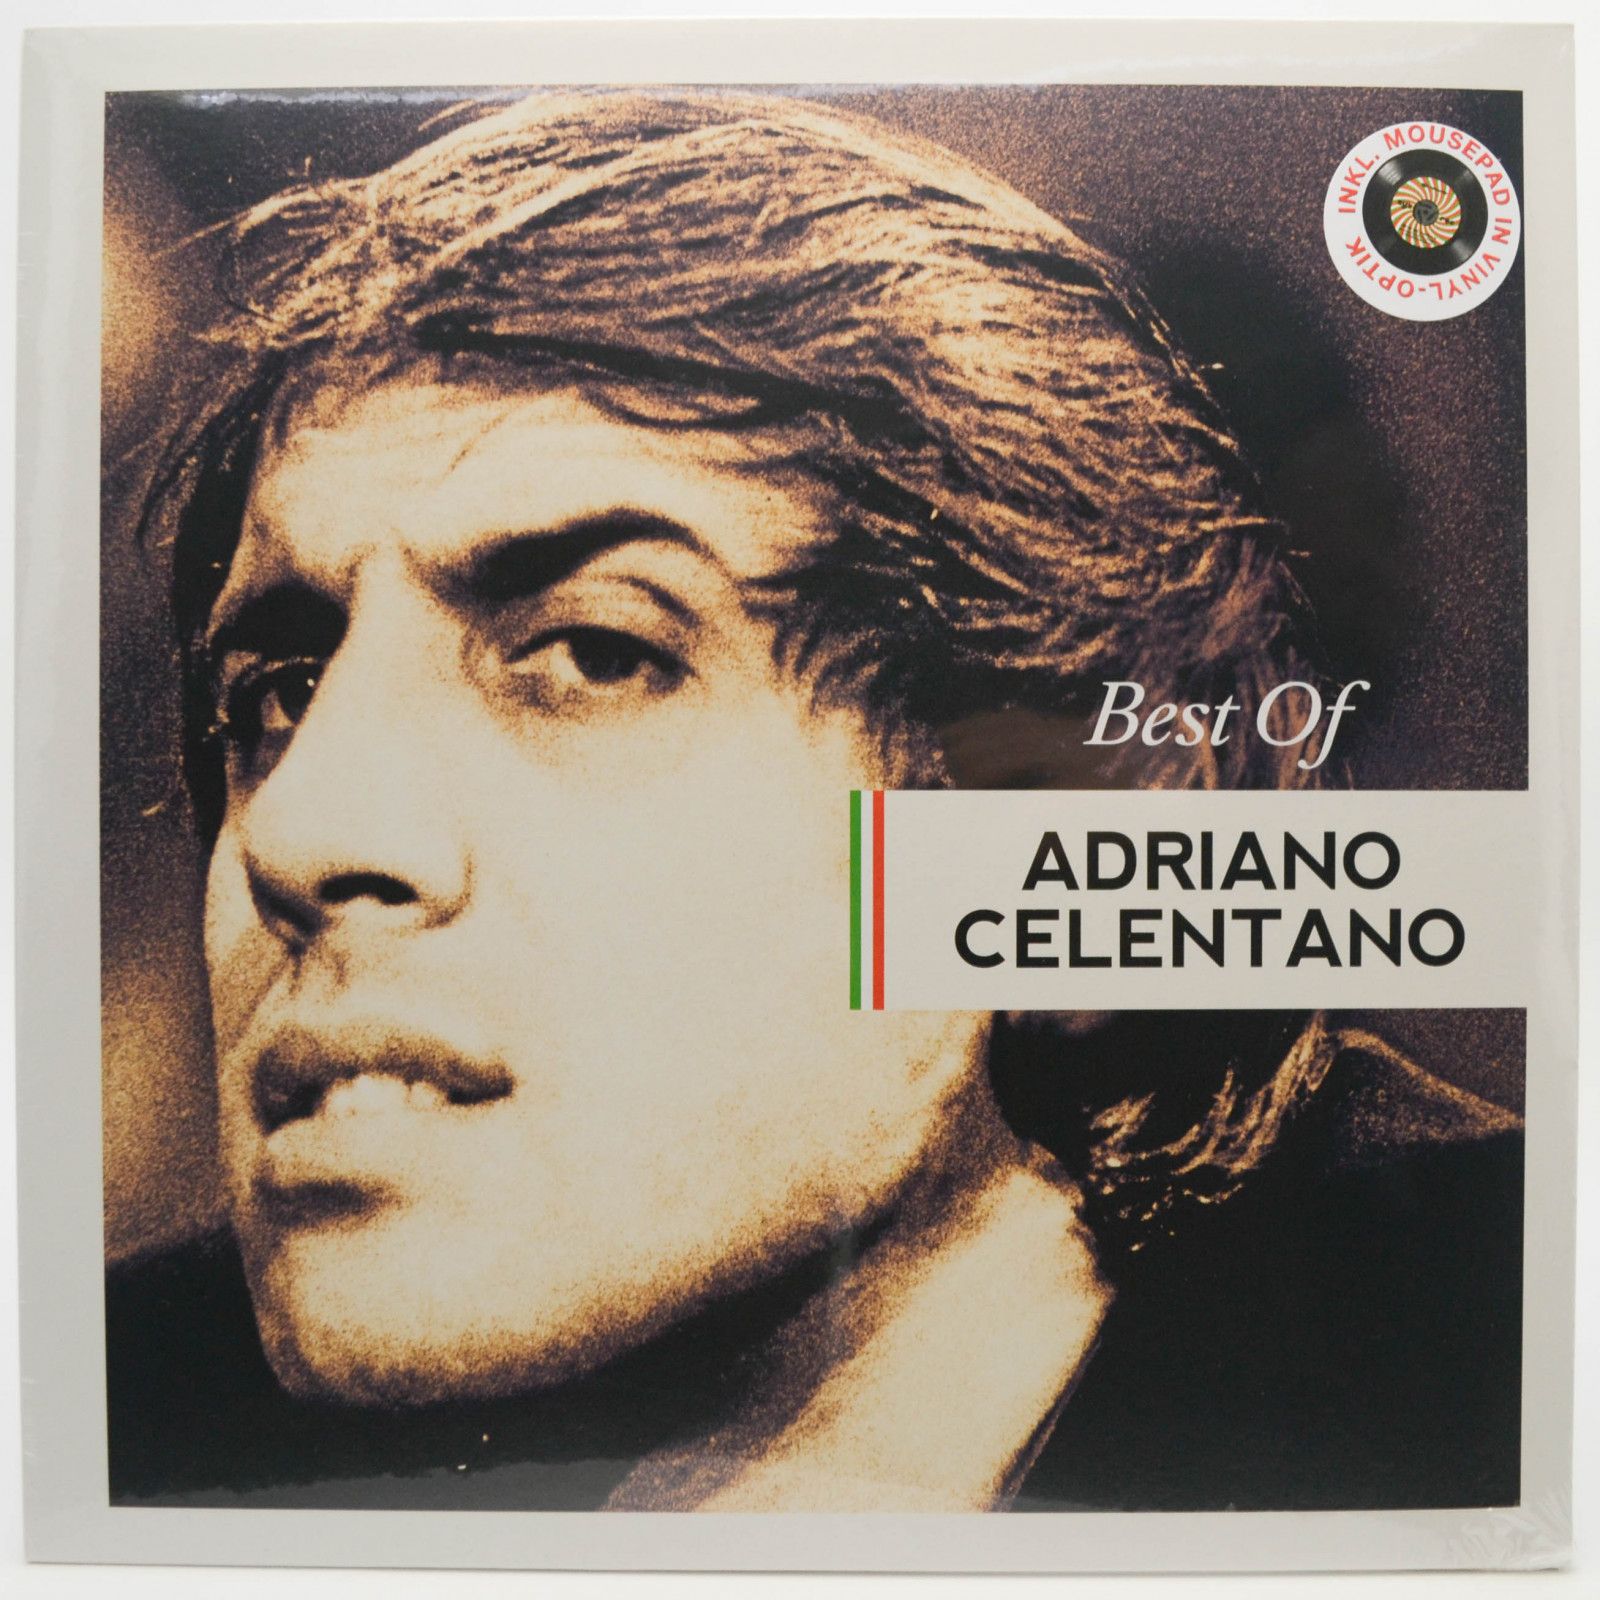 Adriano Celentano — Best Of, 2020